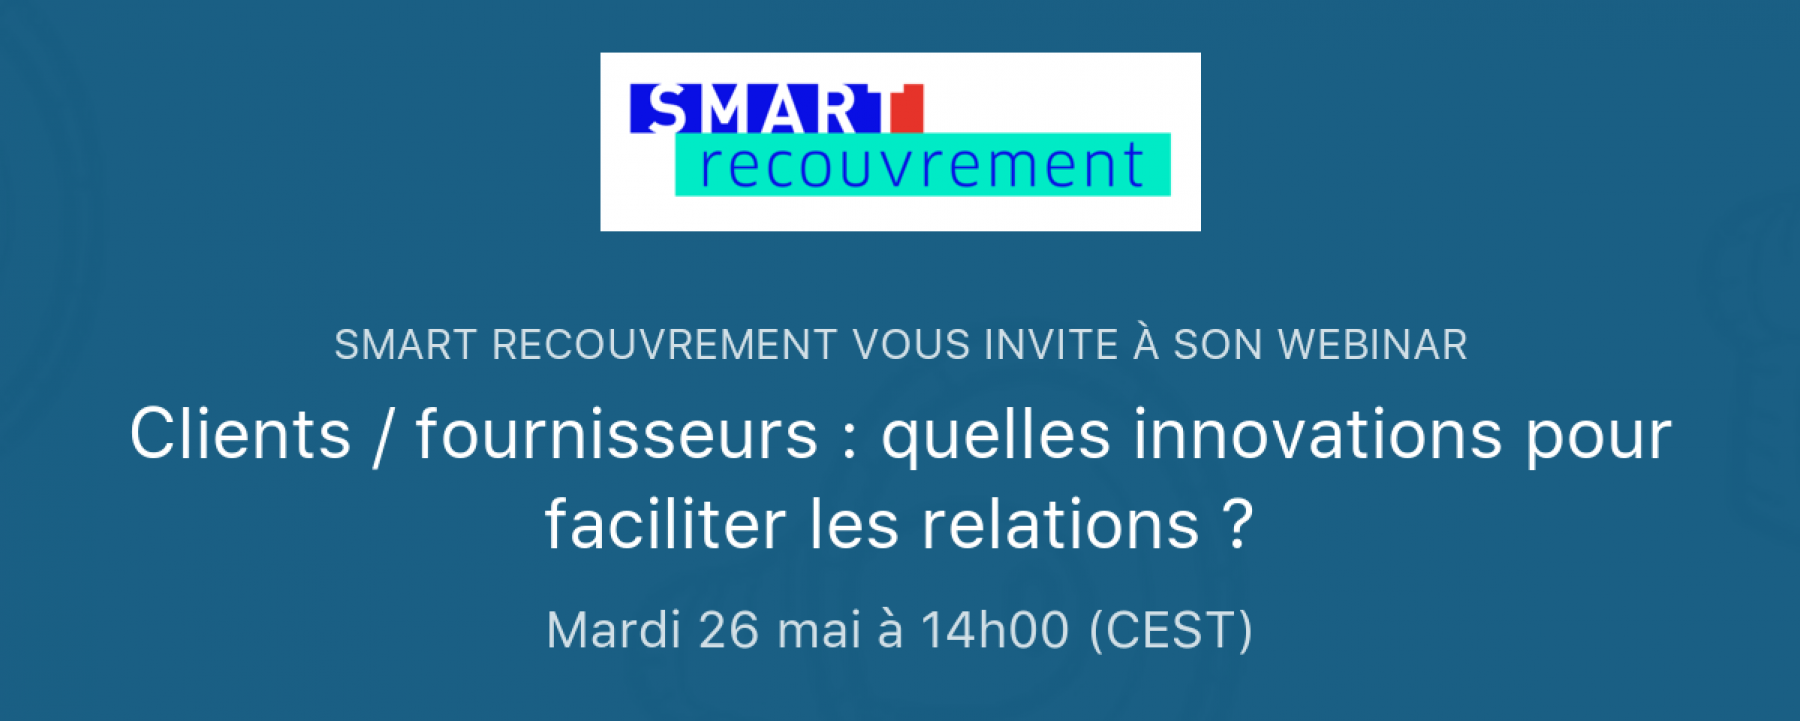 Webinar Clients / fournisseurs : quelles innovations pour faciliter les relations ?, le 26 mai 2020, organisé par Smart Recouvrement 